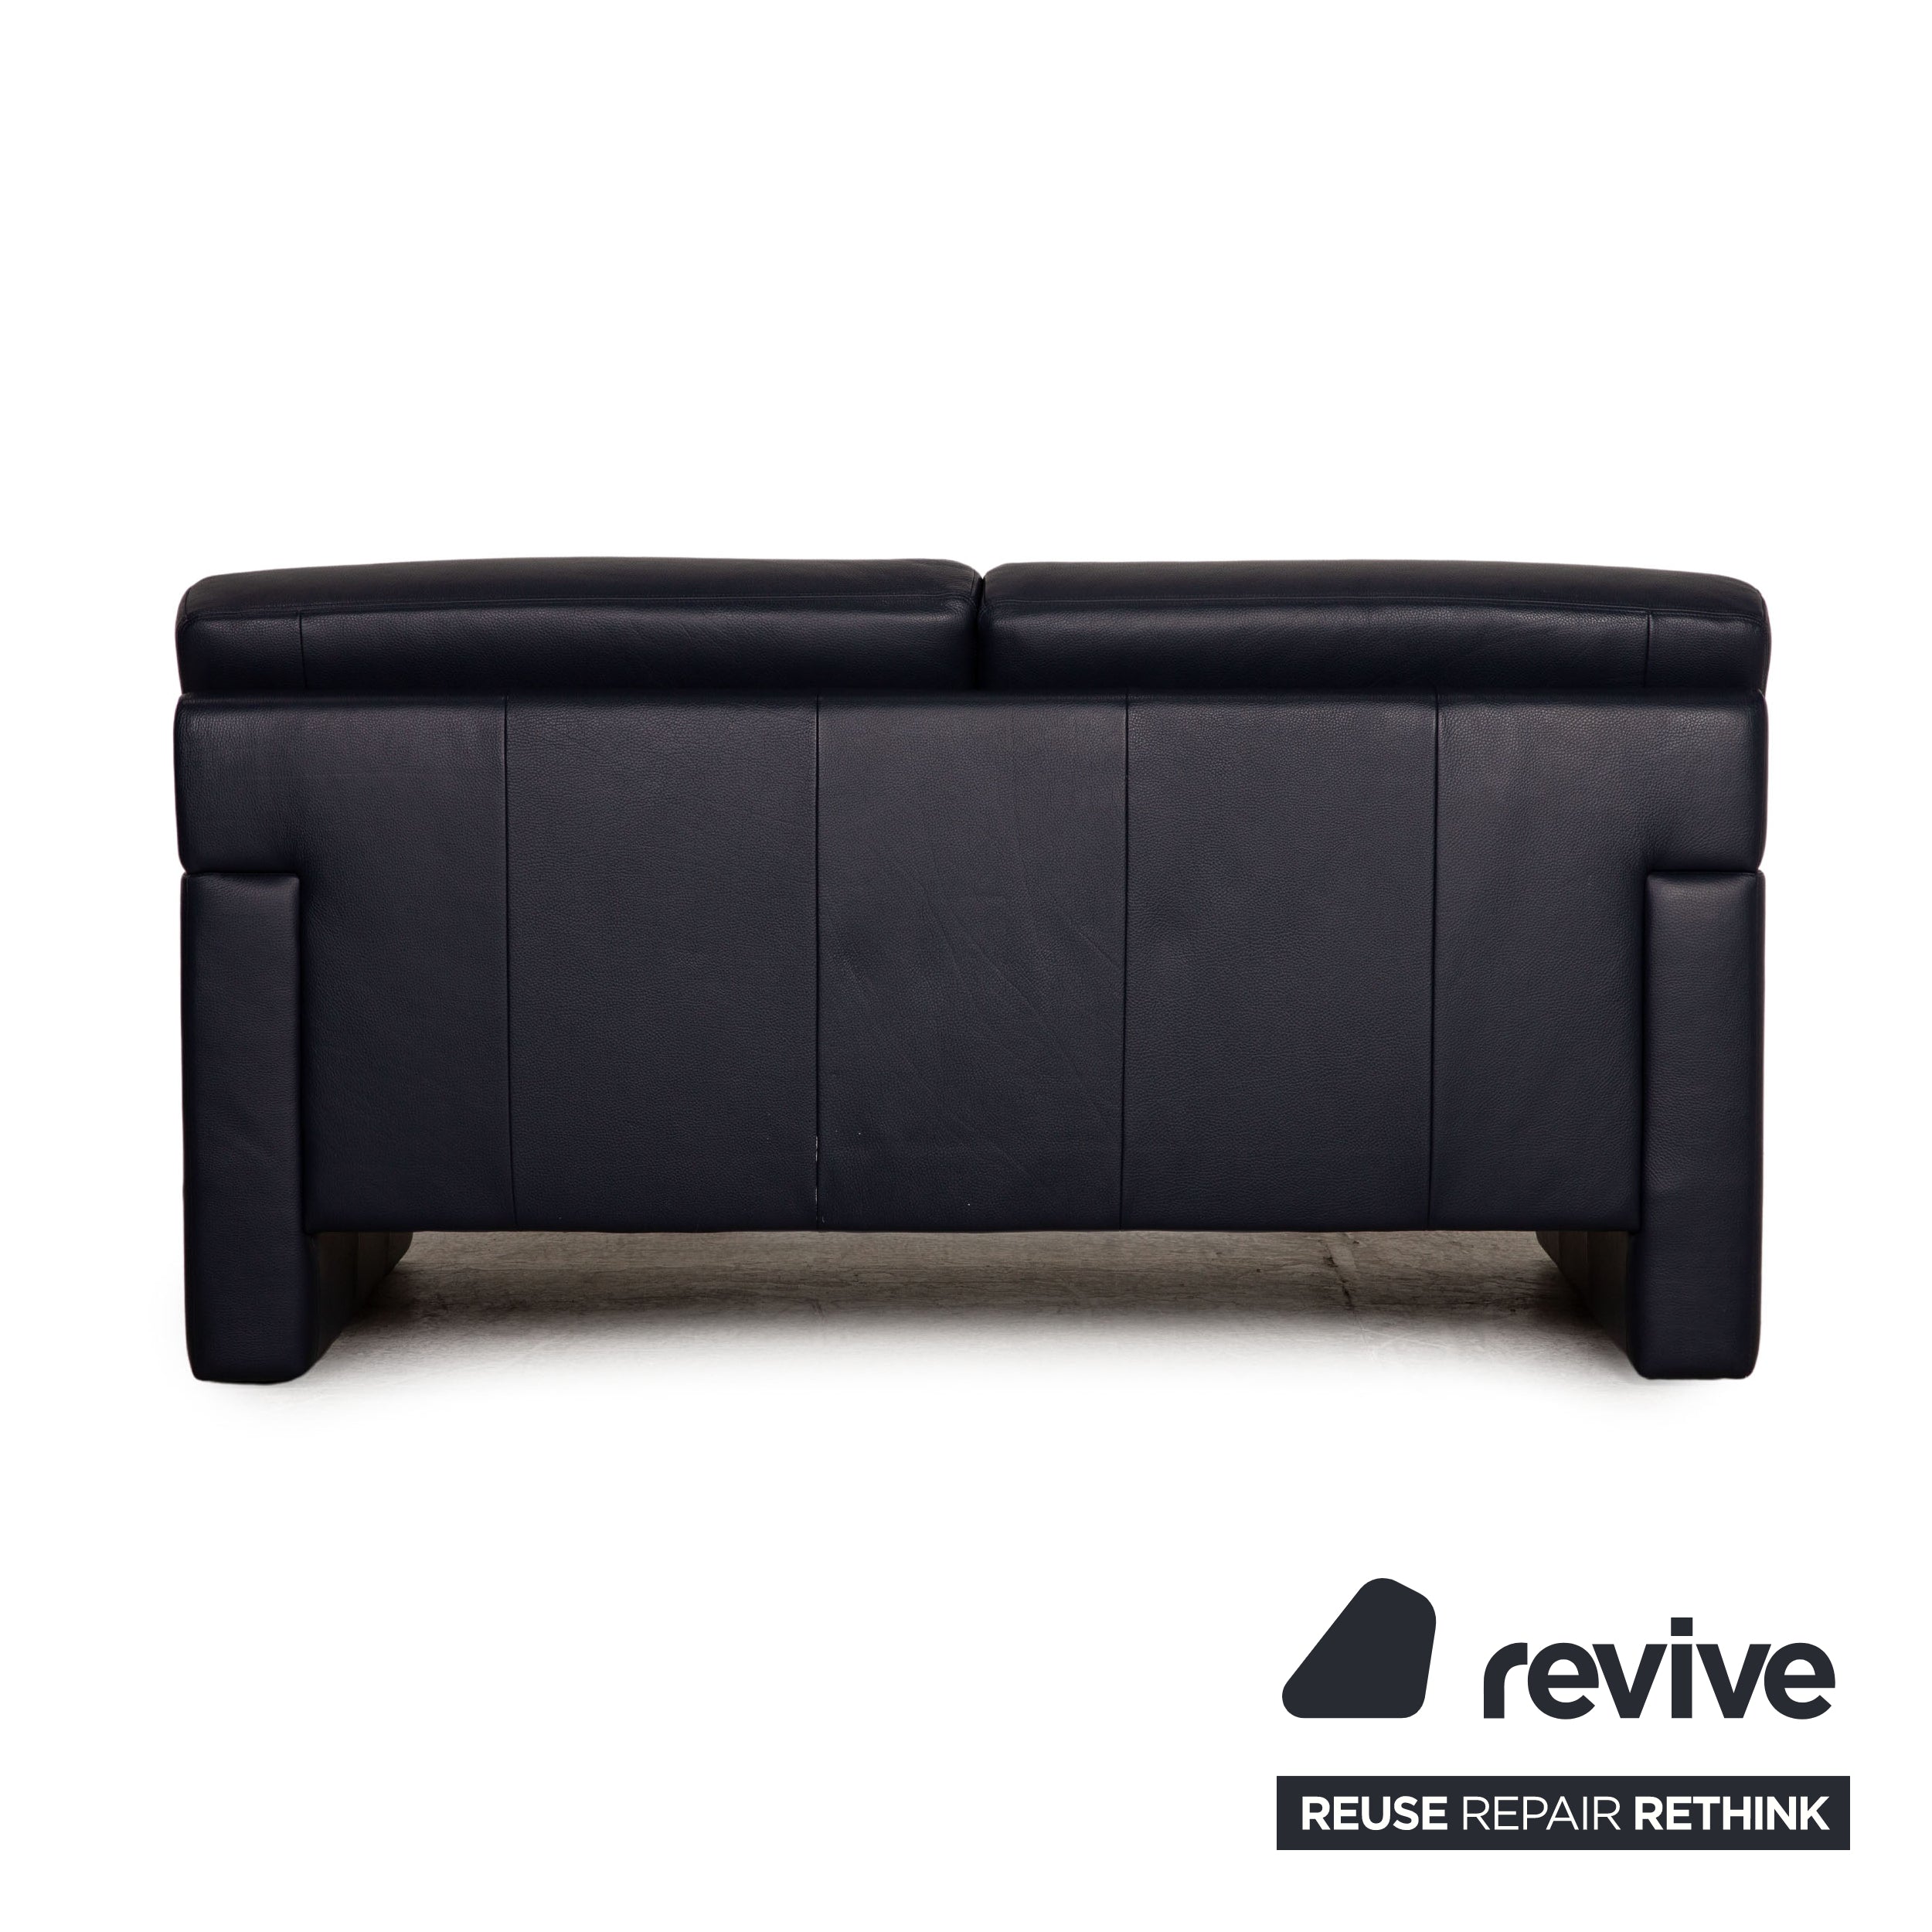 Erpo CL 300 Designer Leder Sofa Zweisitzer Blau Couch